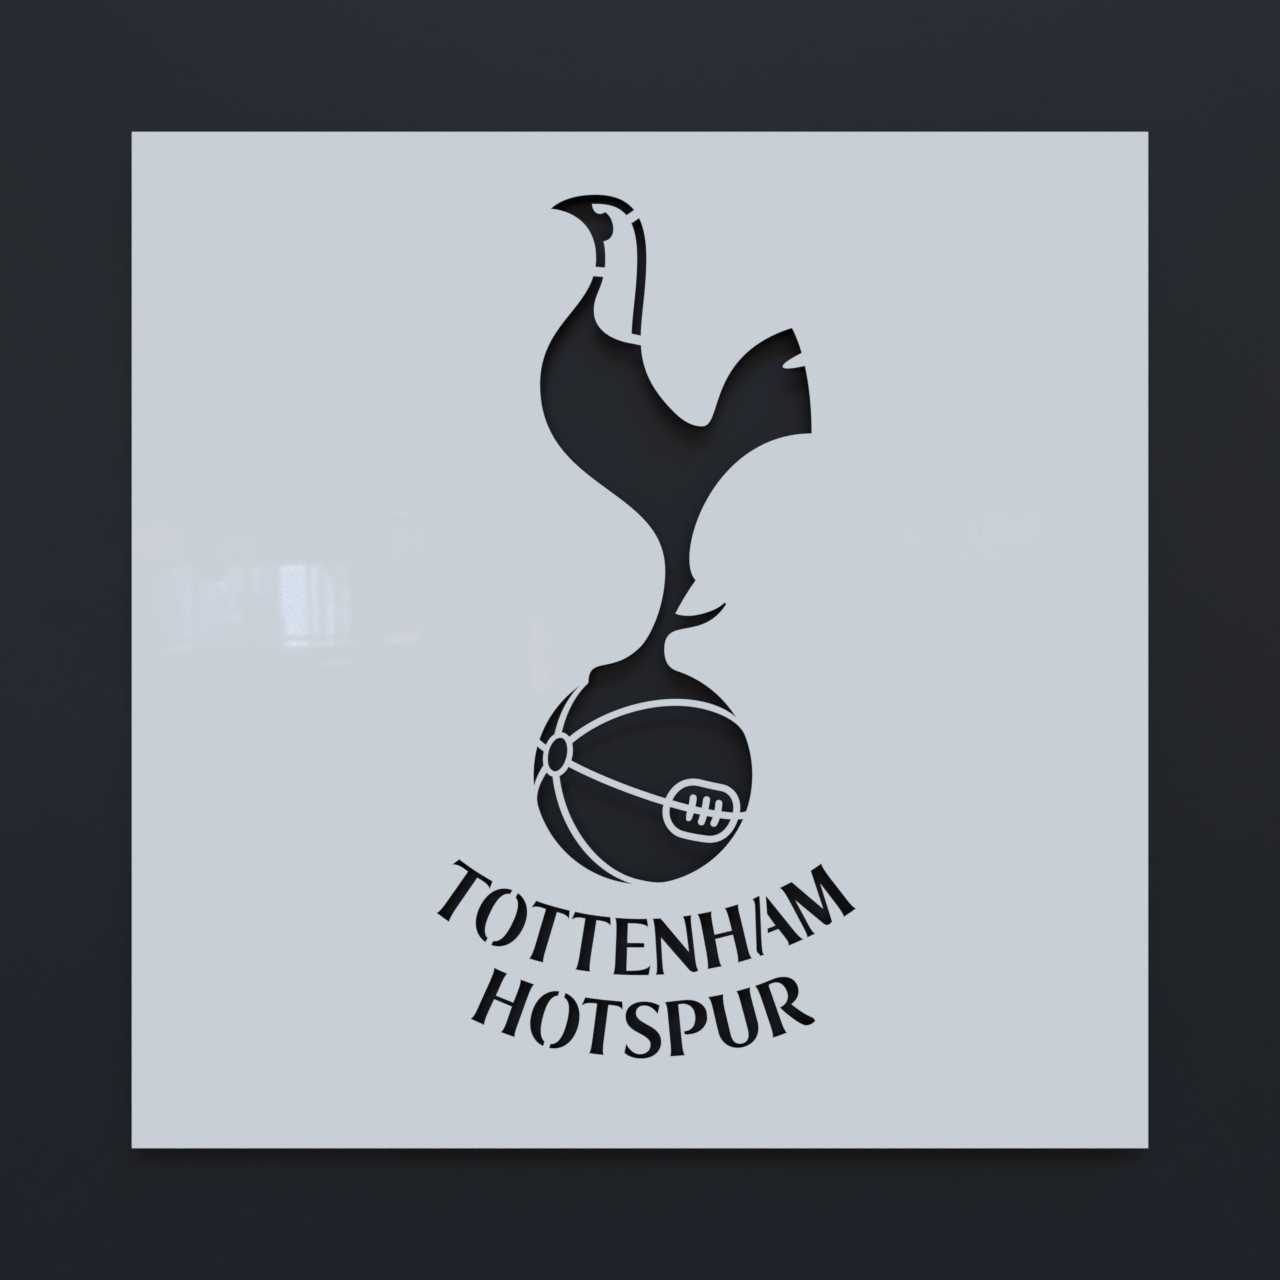 Tottenham Hotspurs Crest